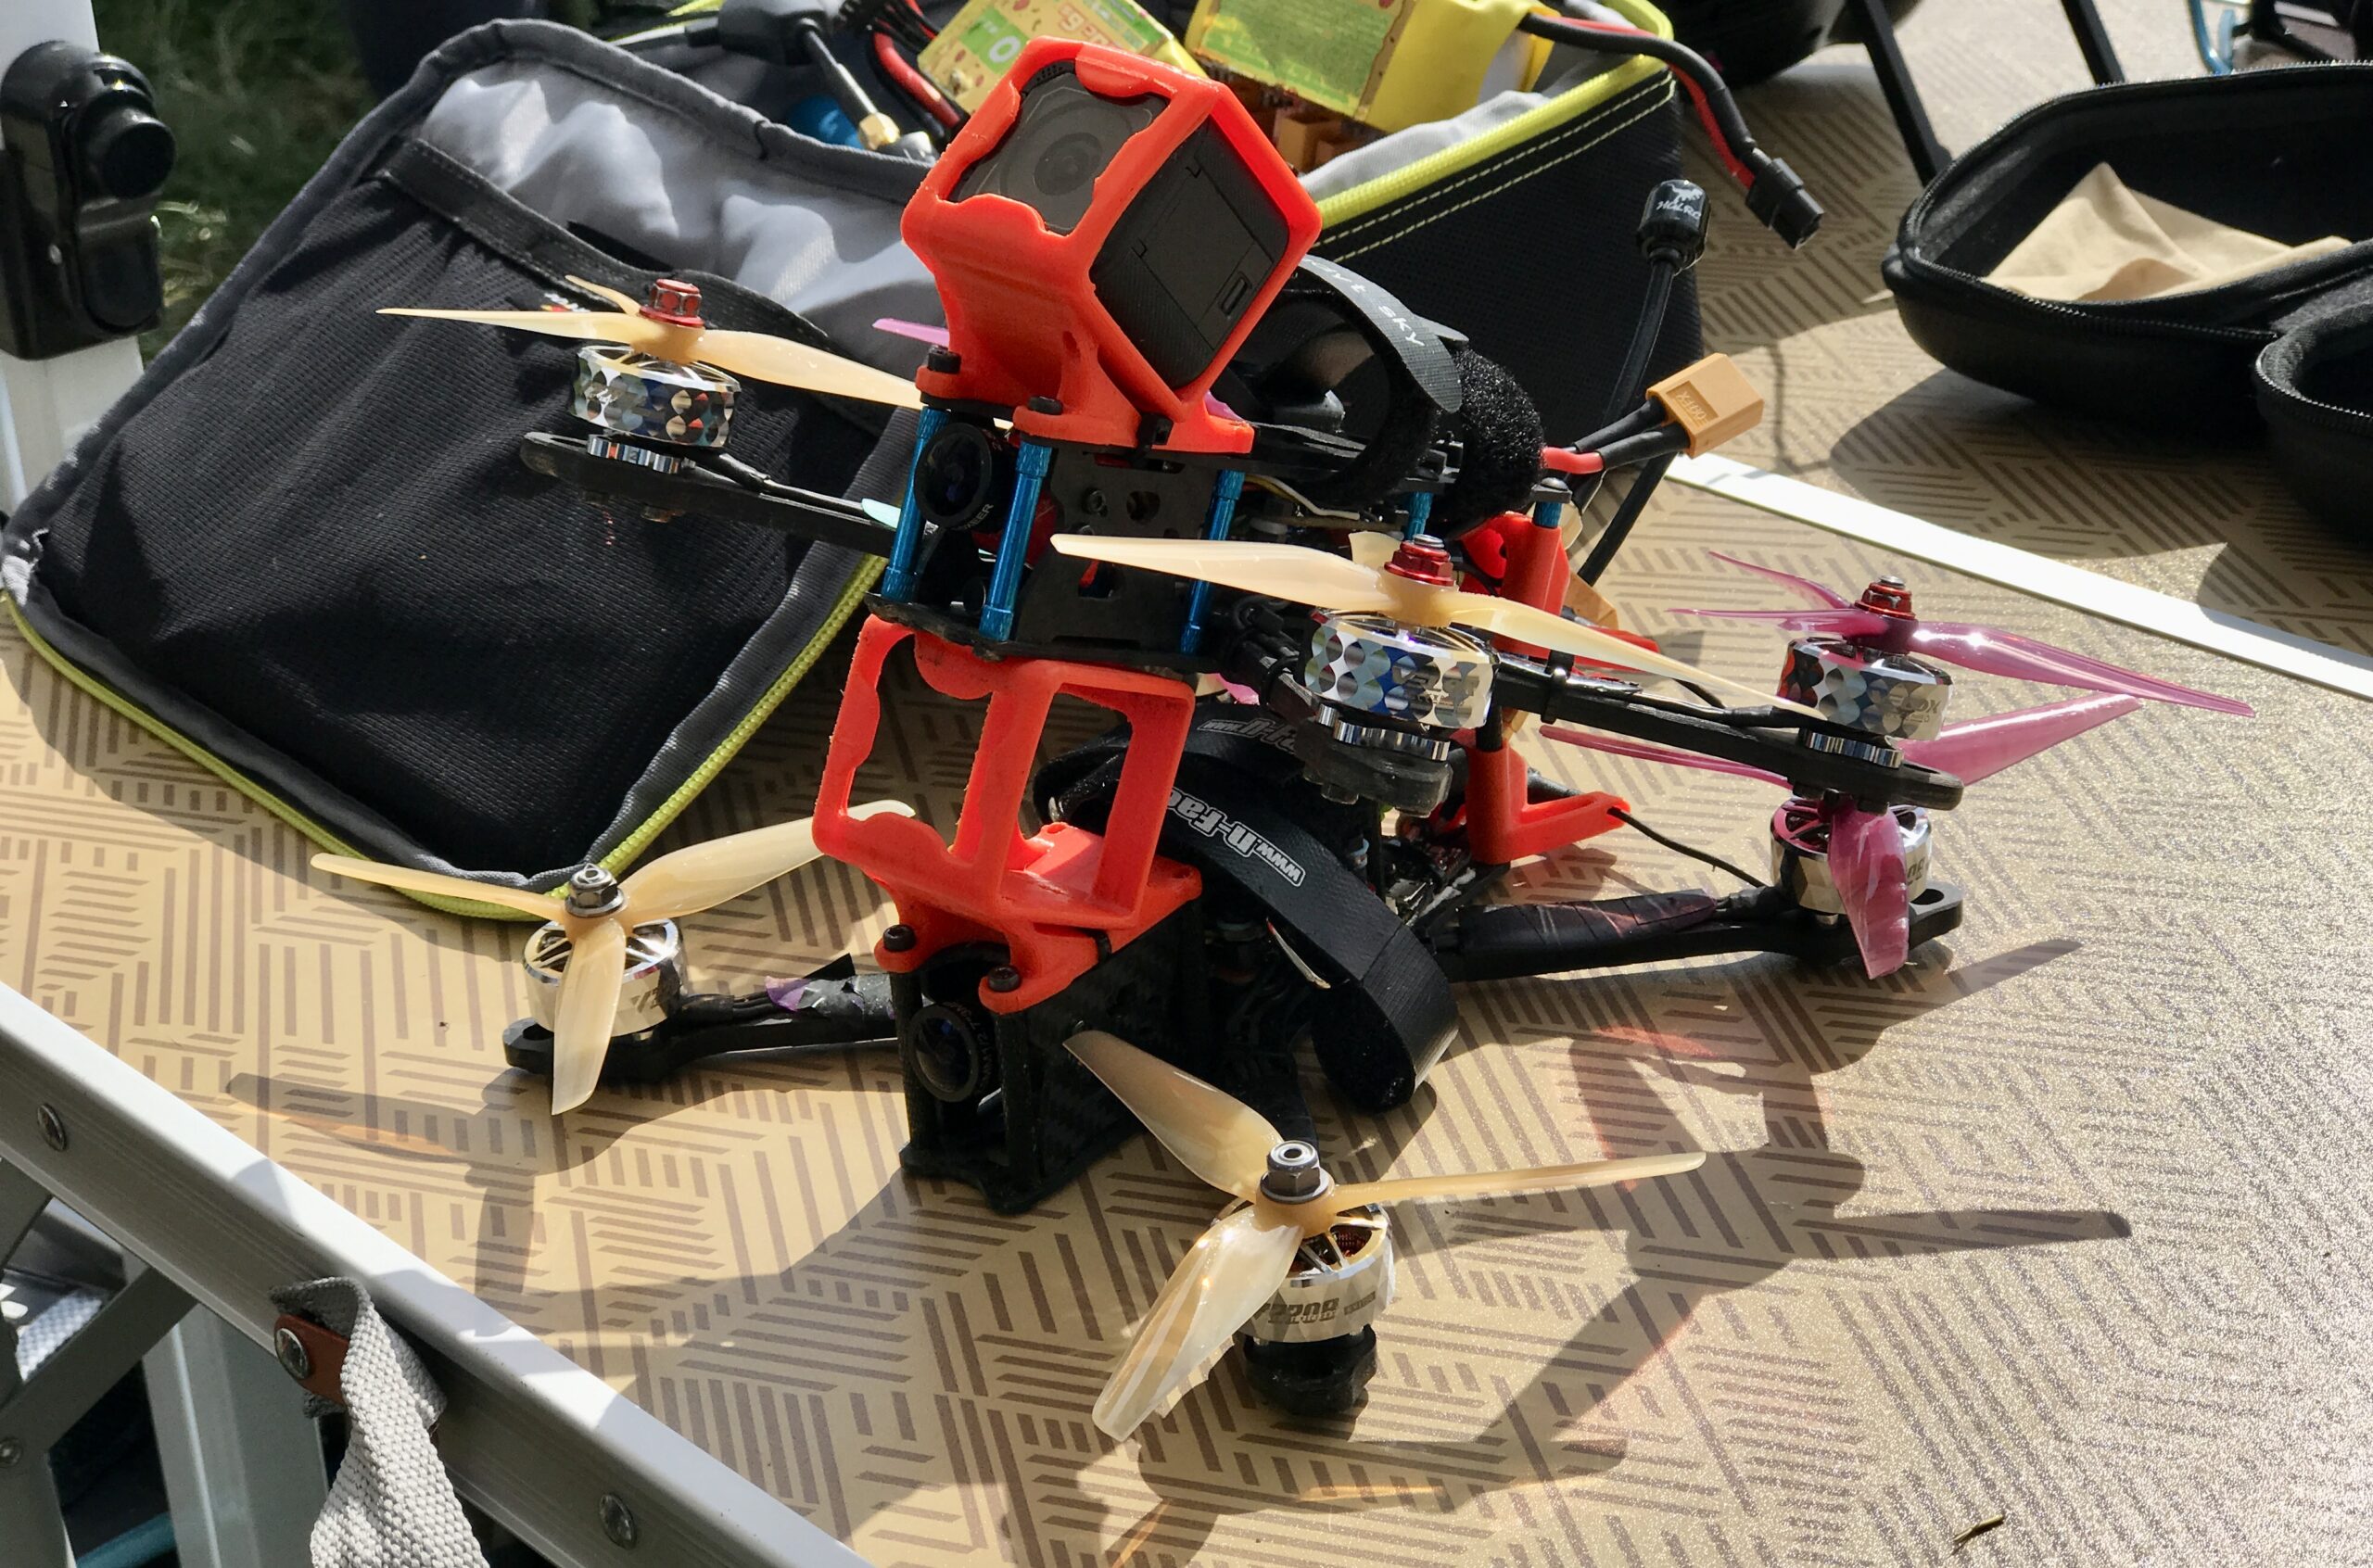 Успяхме да бъдем част от състезанието! дрон състезане дронове drone arena multigp